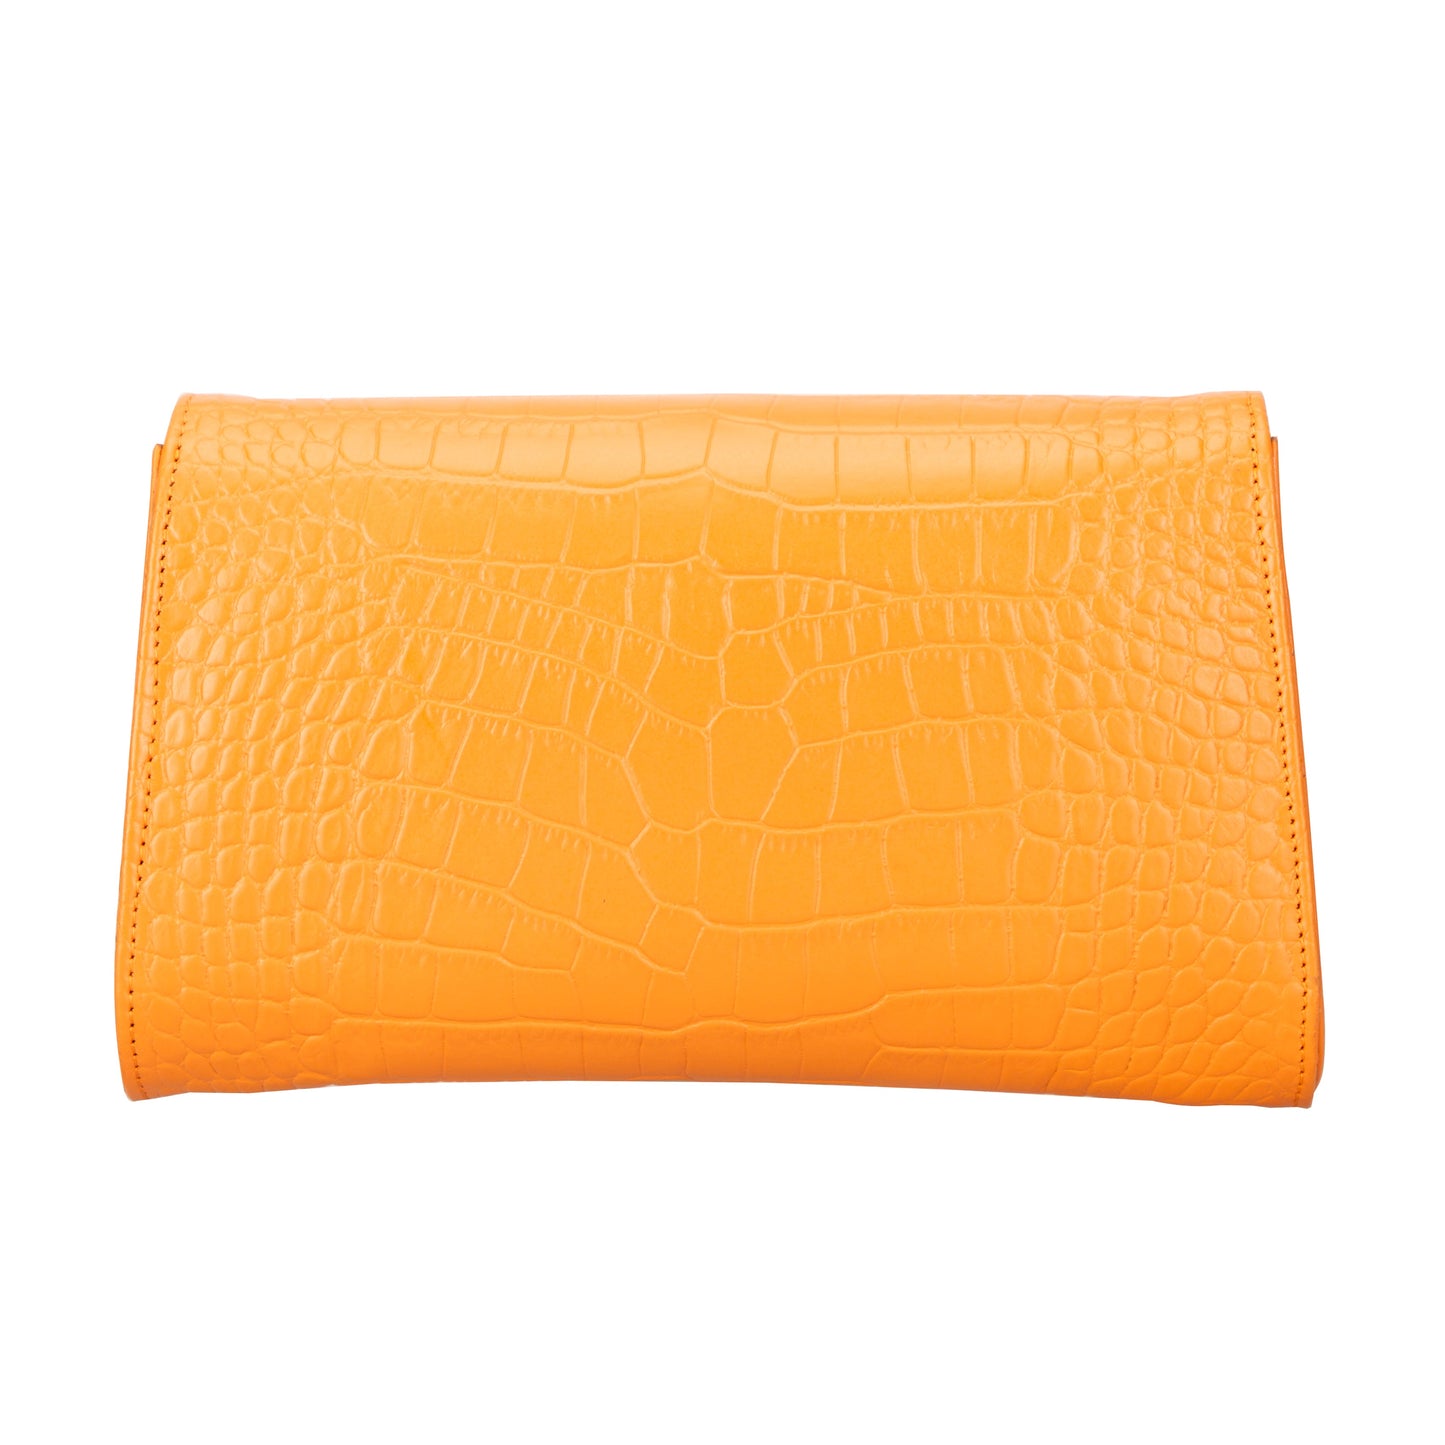 Molly Women Clutch Bag - Orange Croc